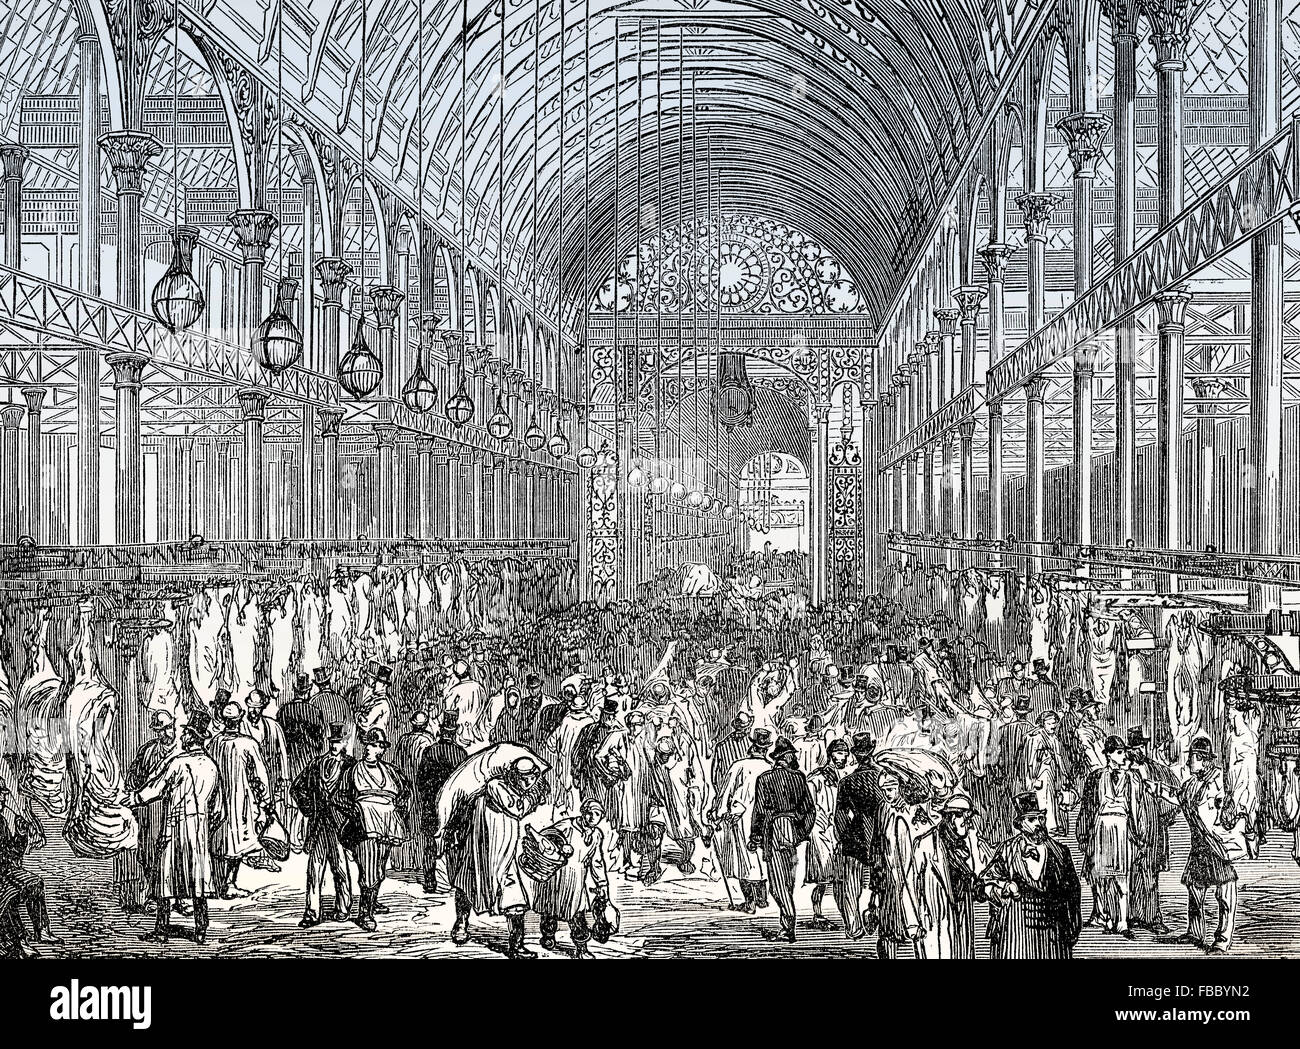 Marché de Smithfield, viande et volaille market Hall, 19e siècle, Londres, UK Banque D'Images